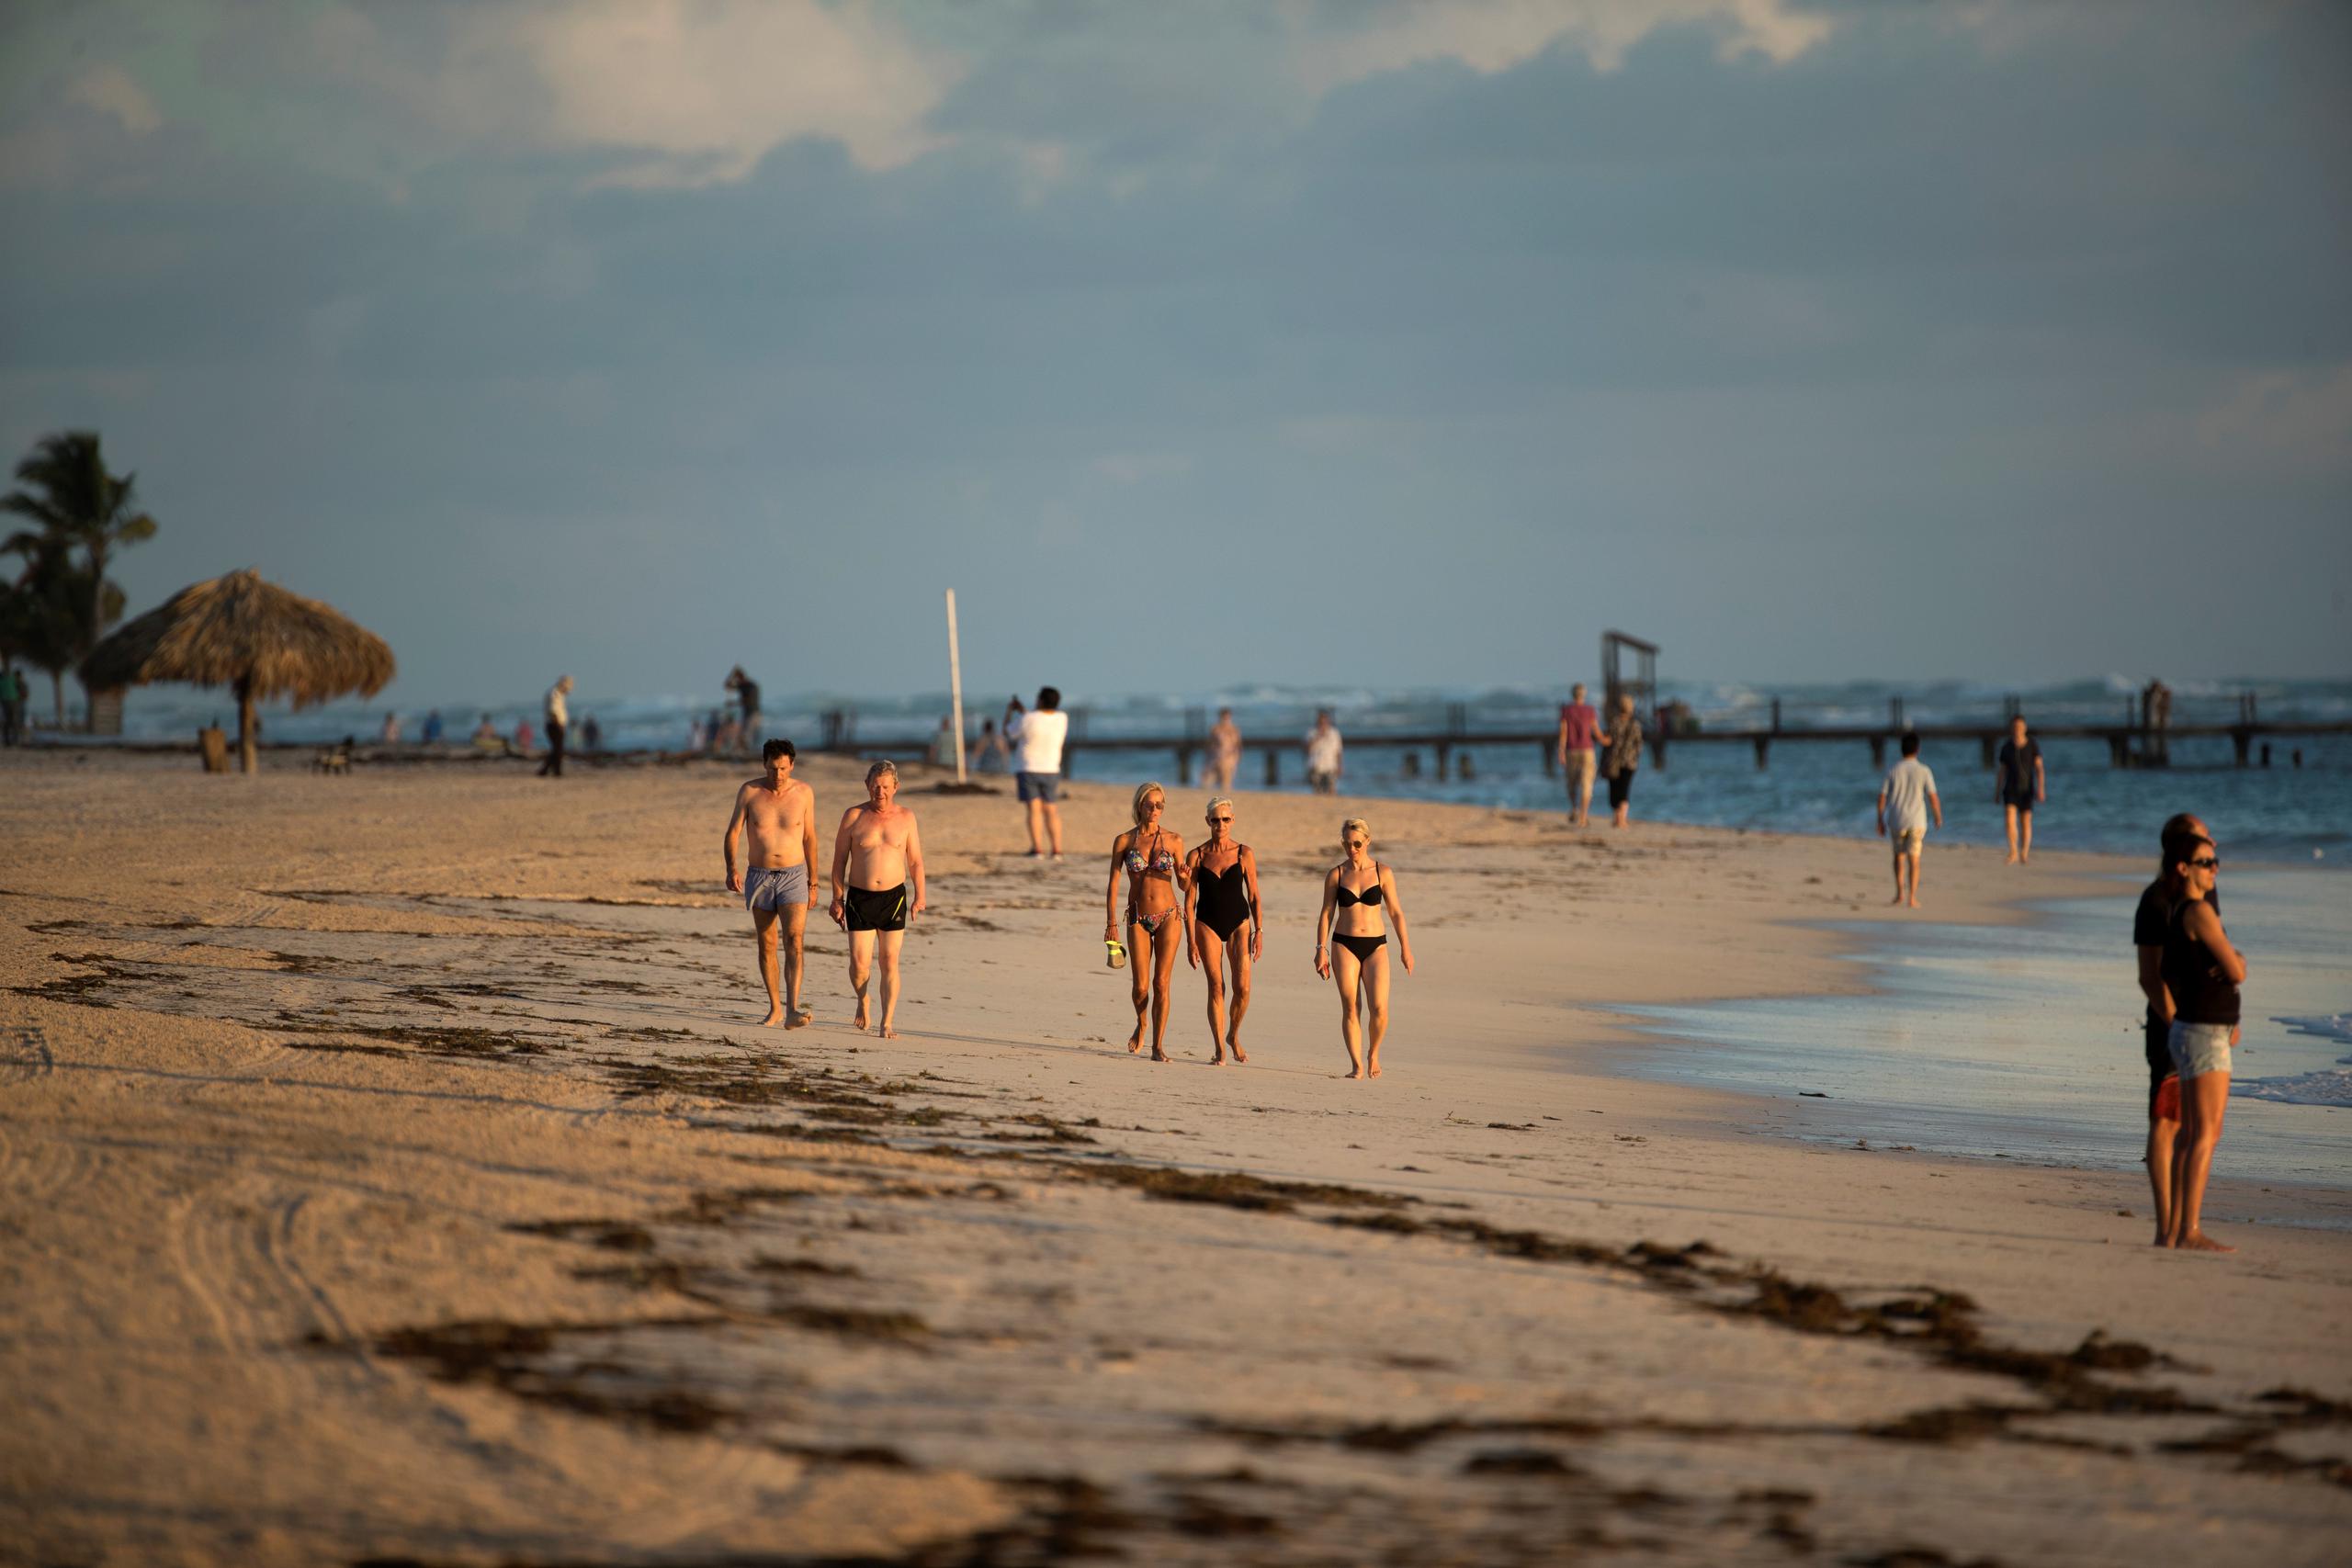 Turistas caminan por playa Bávaro, uno de los principales destinos turísticos del Caribe, en Punta Cana (República Dominicana).